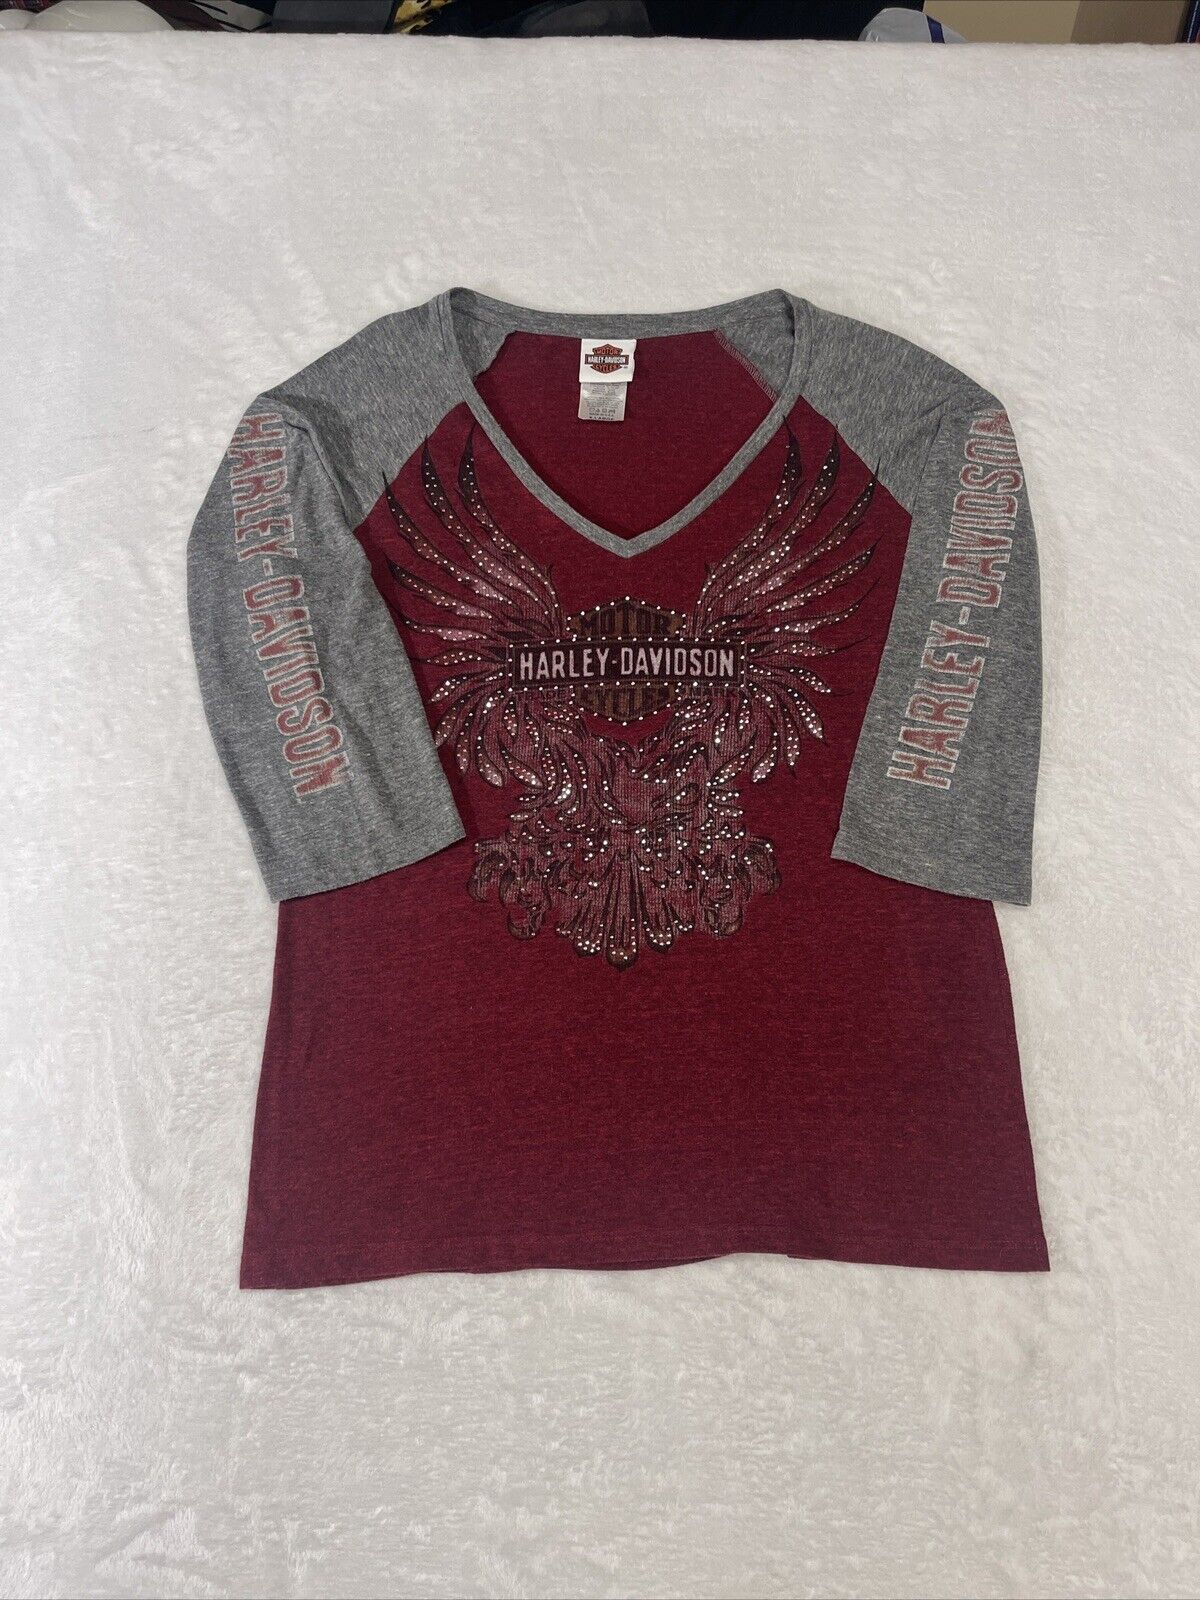 Harley Davidson Shirt Womens XL Atlanta GA Baseball Made USA V Neck Red Gray